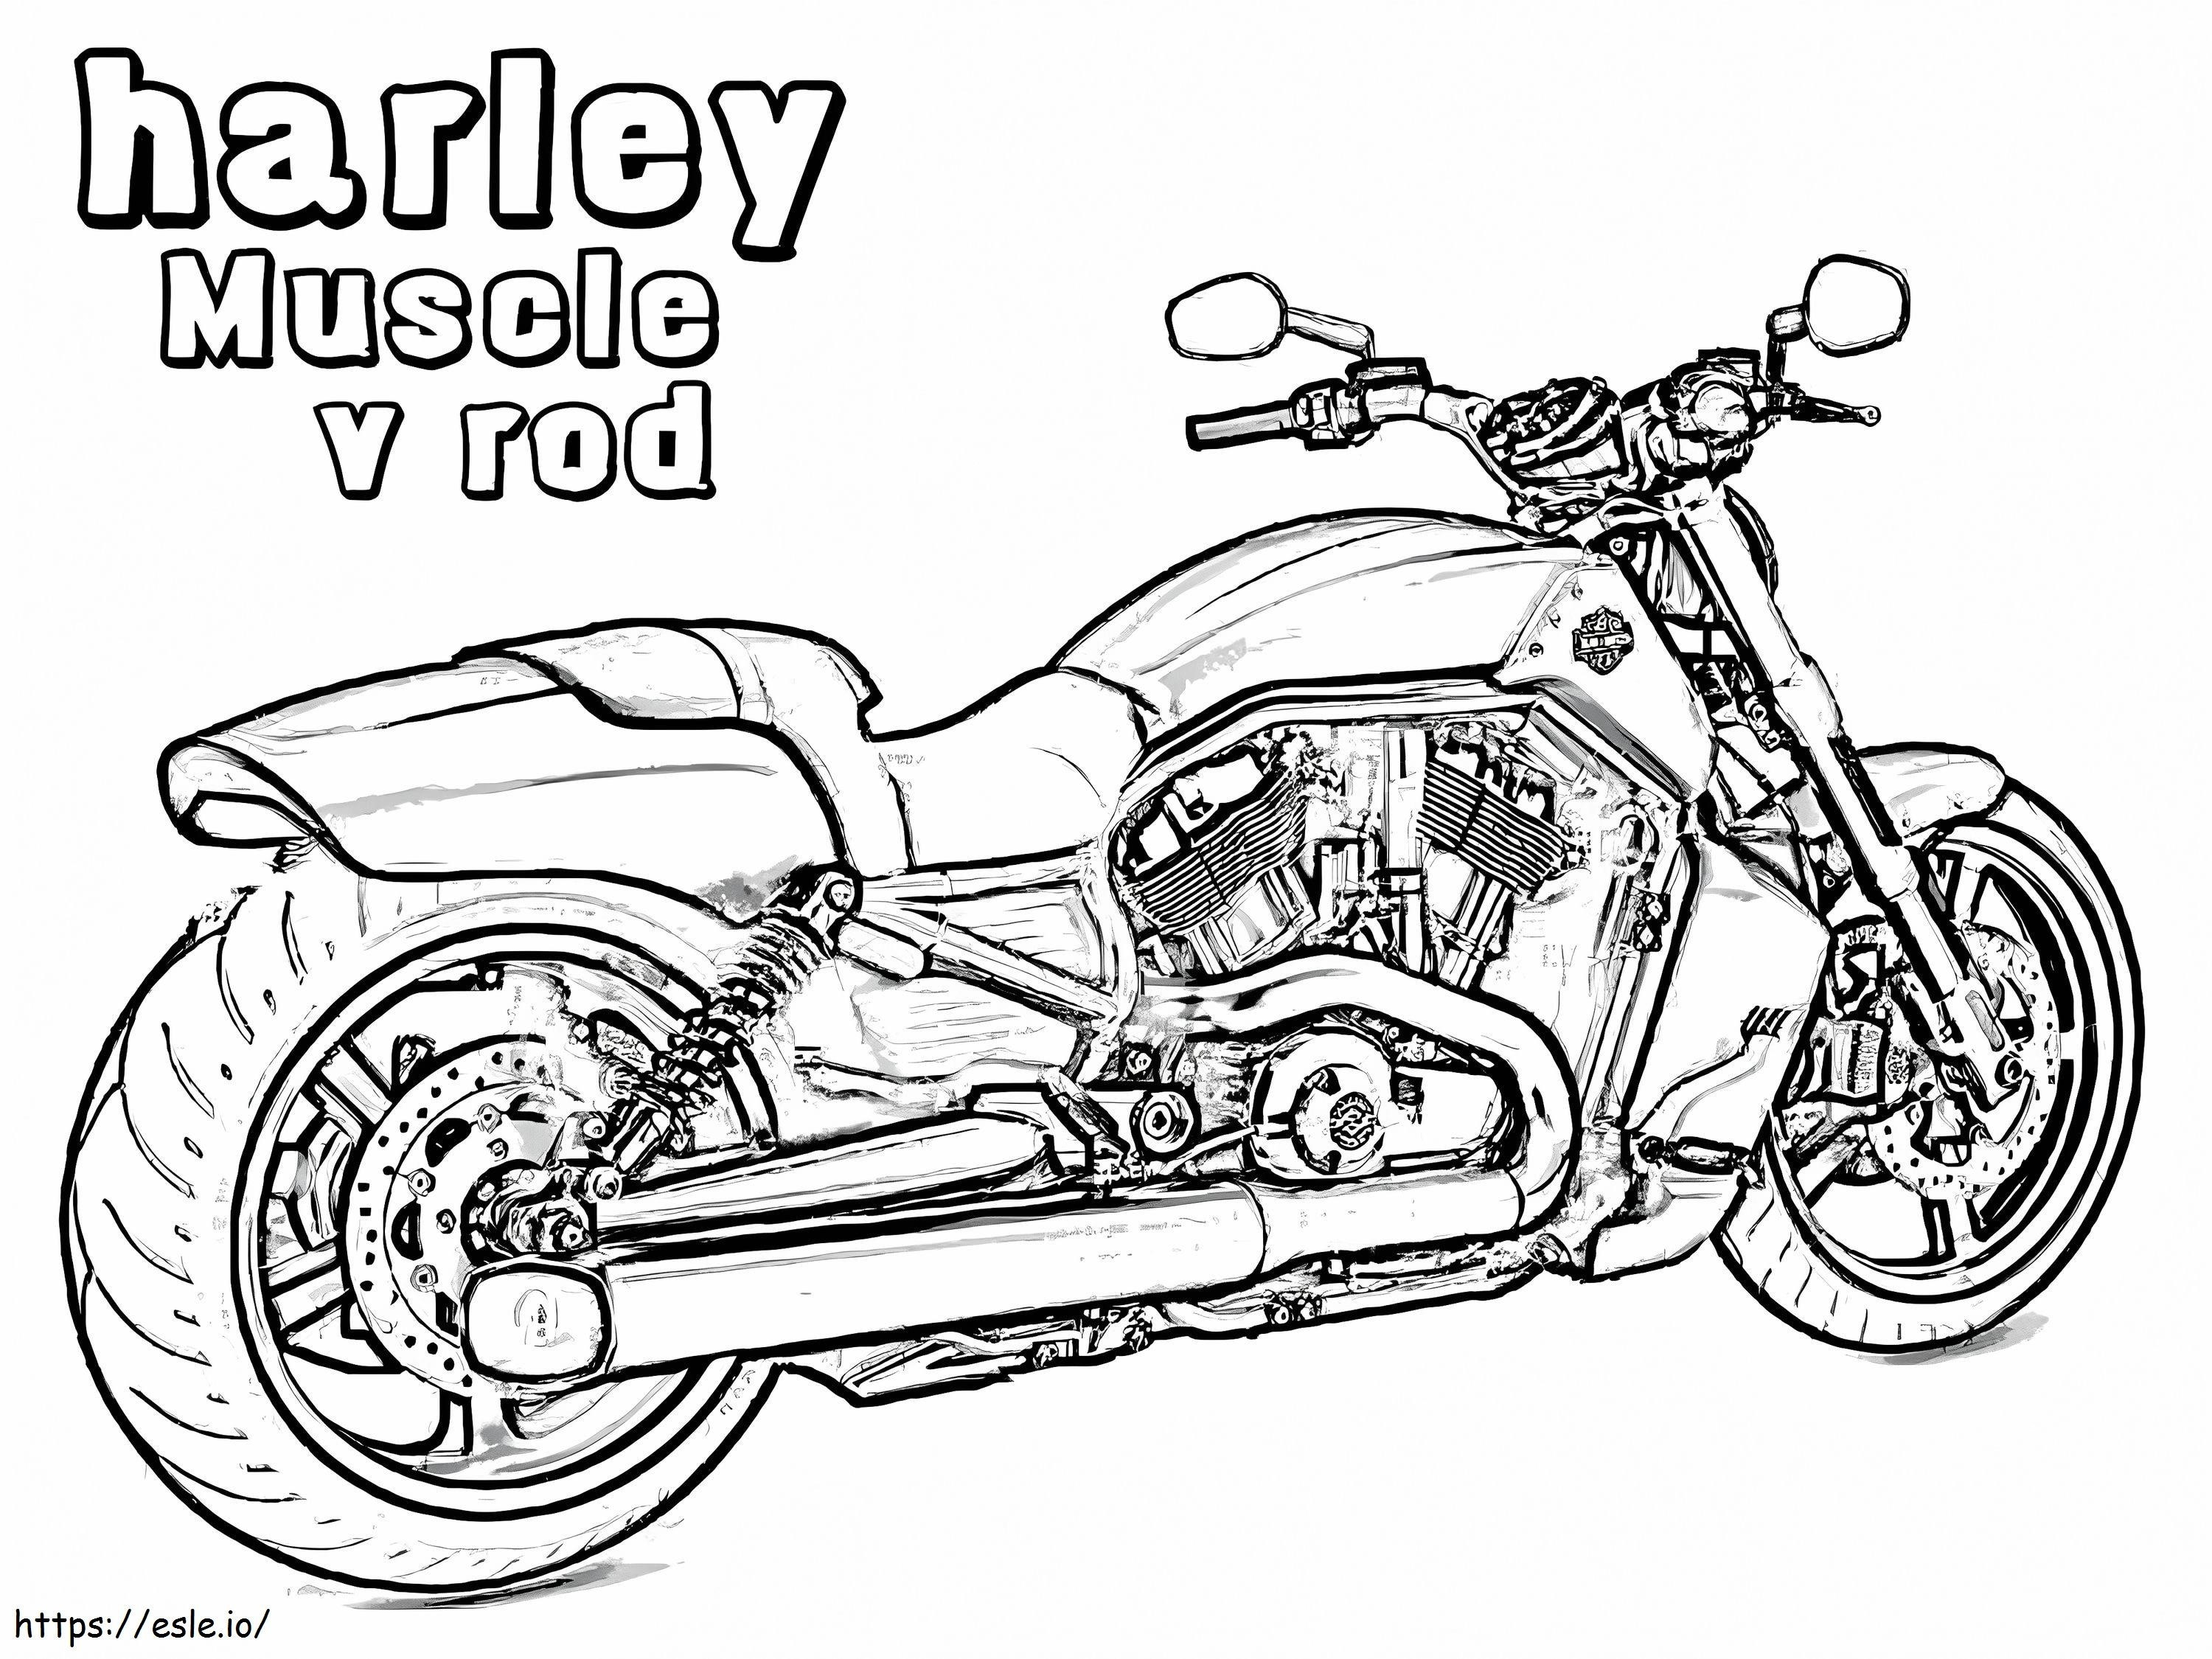 Harley Davidson Yazdırılacak boyama